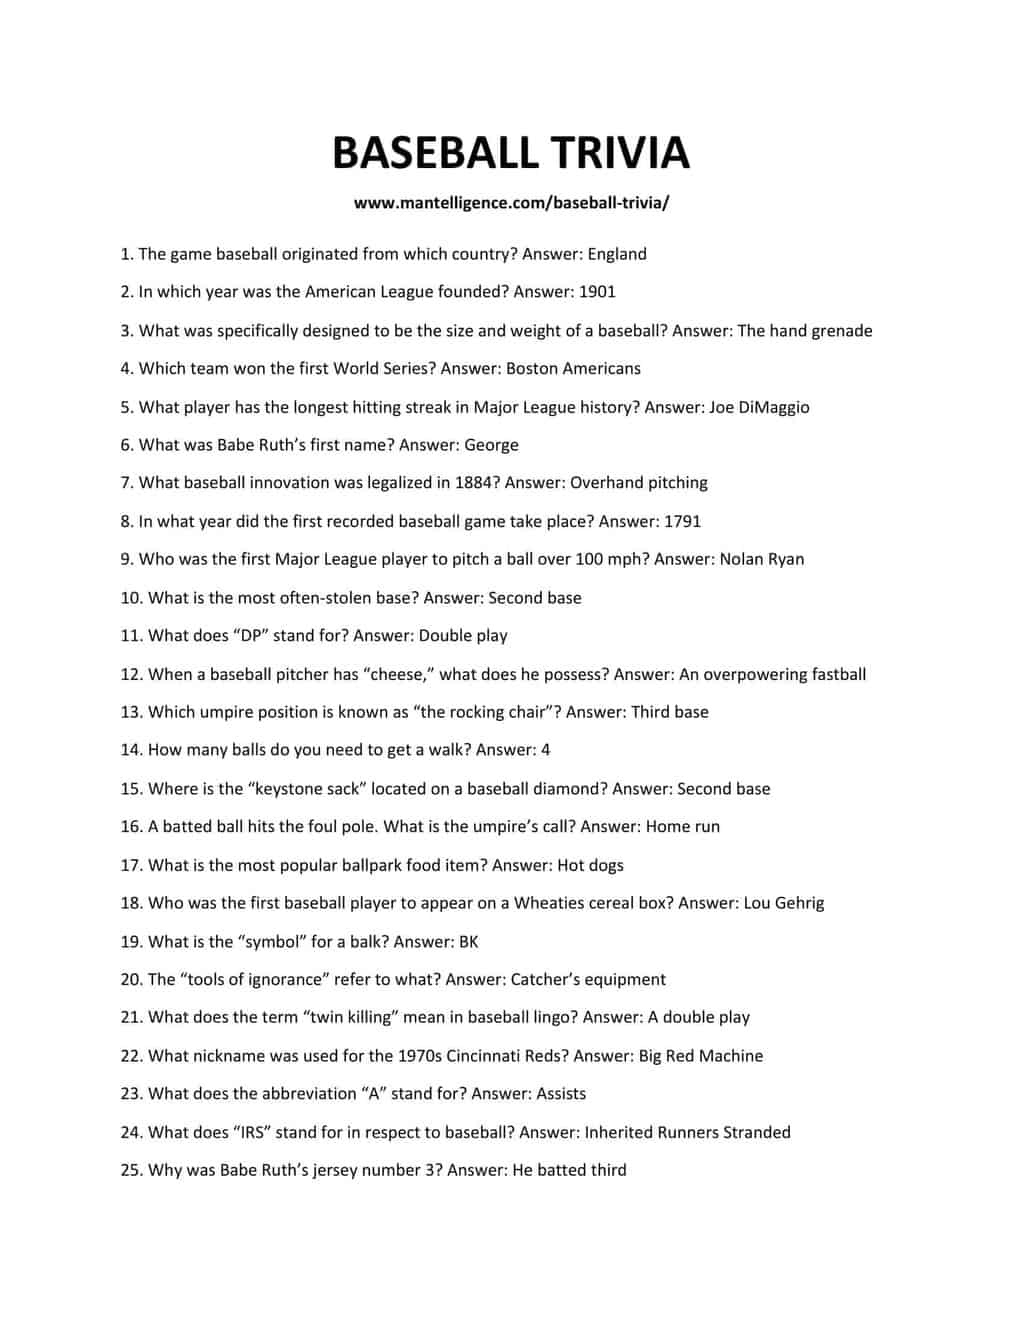 Baseball Trivia Questions